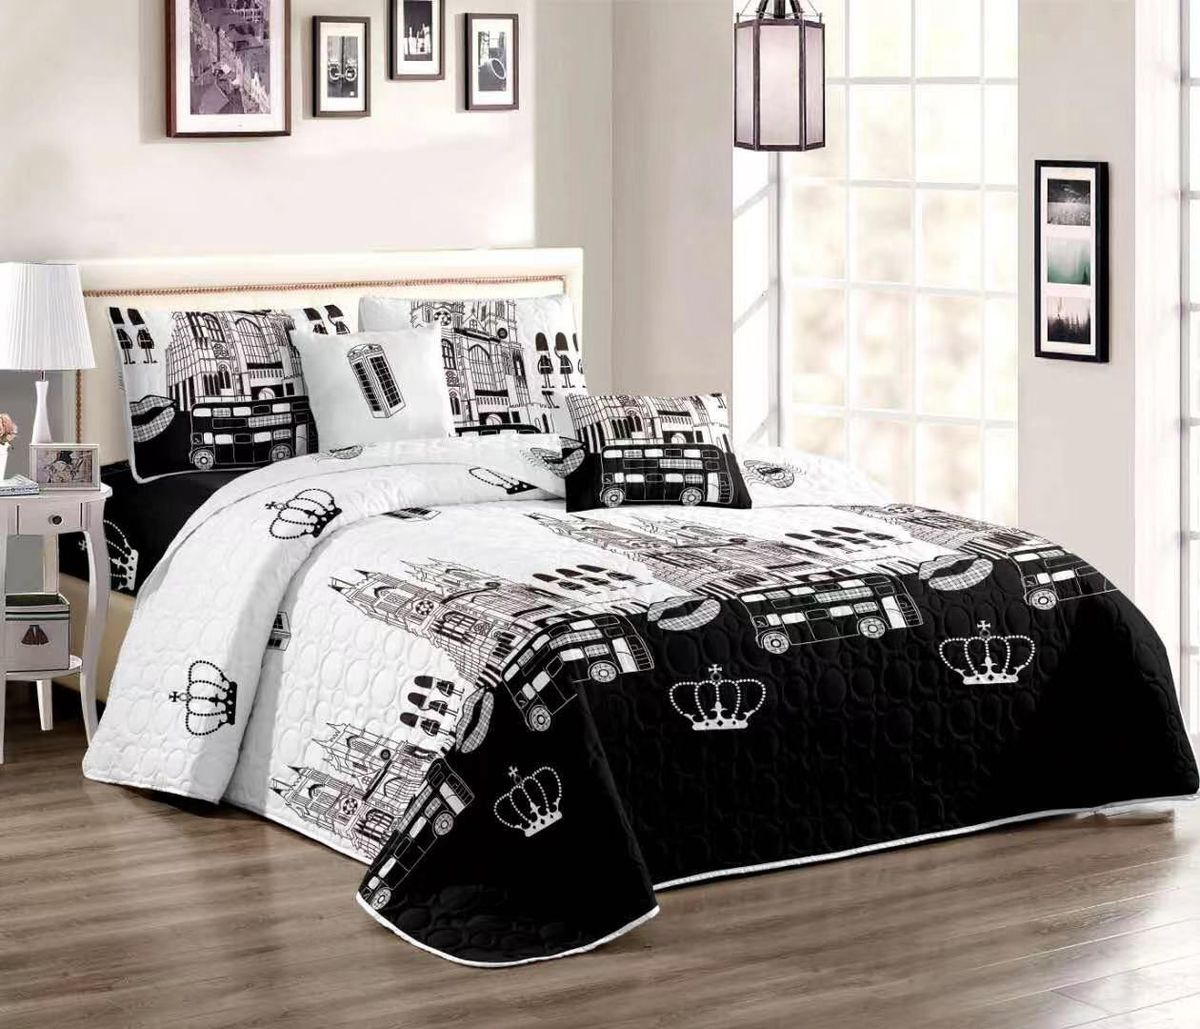 5pc Quilt Set White & Black Building Bedspread Set